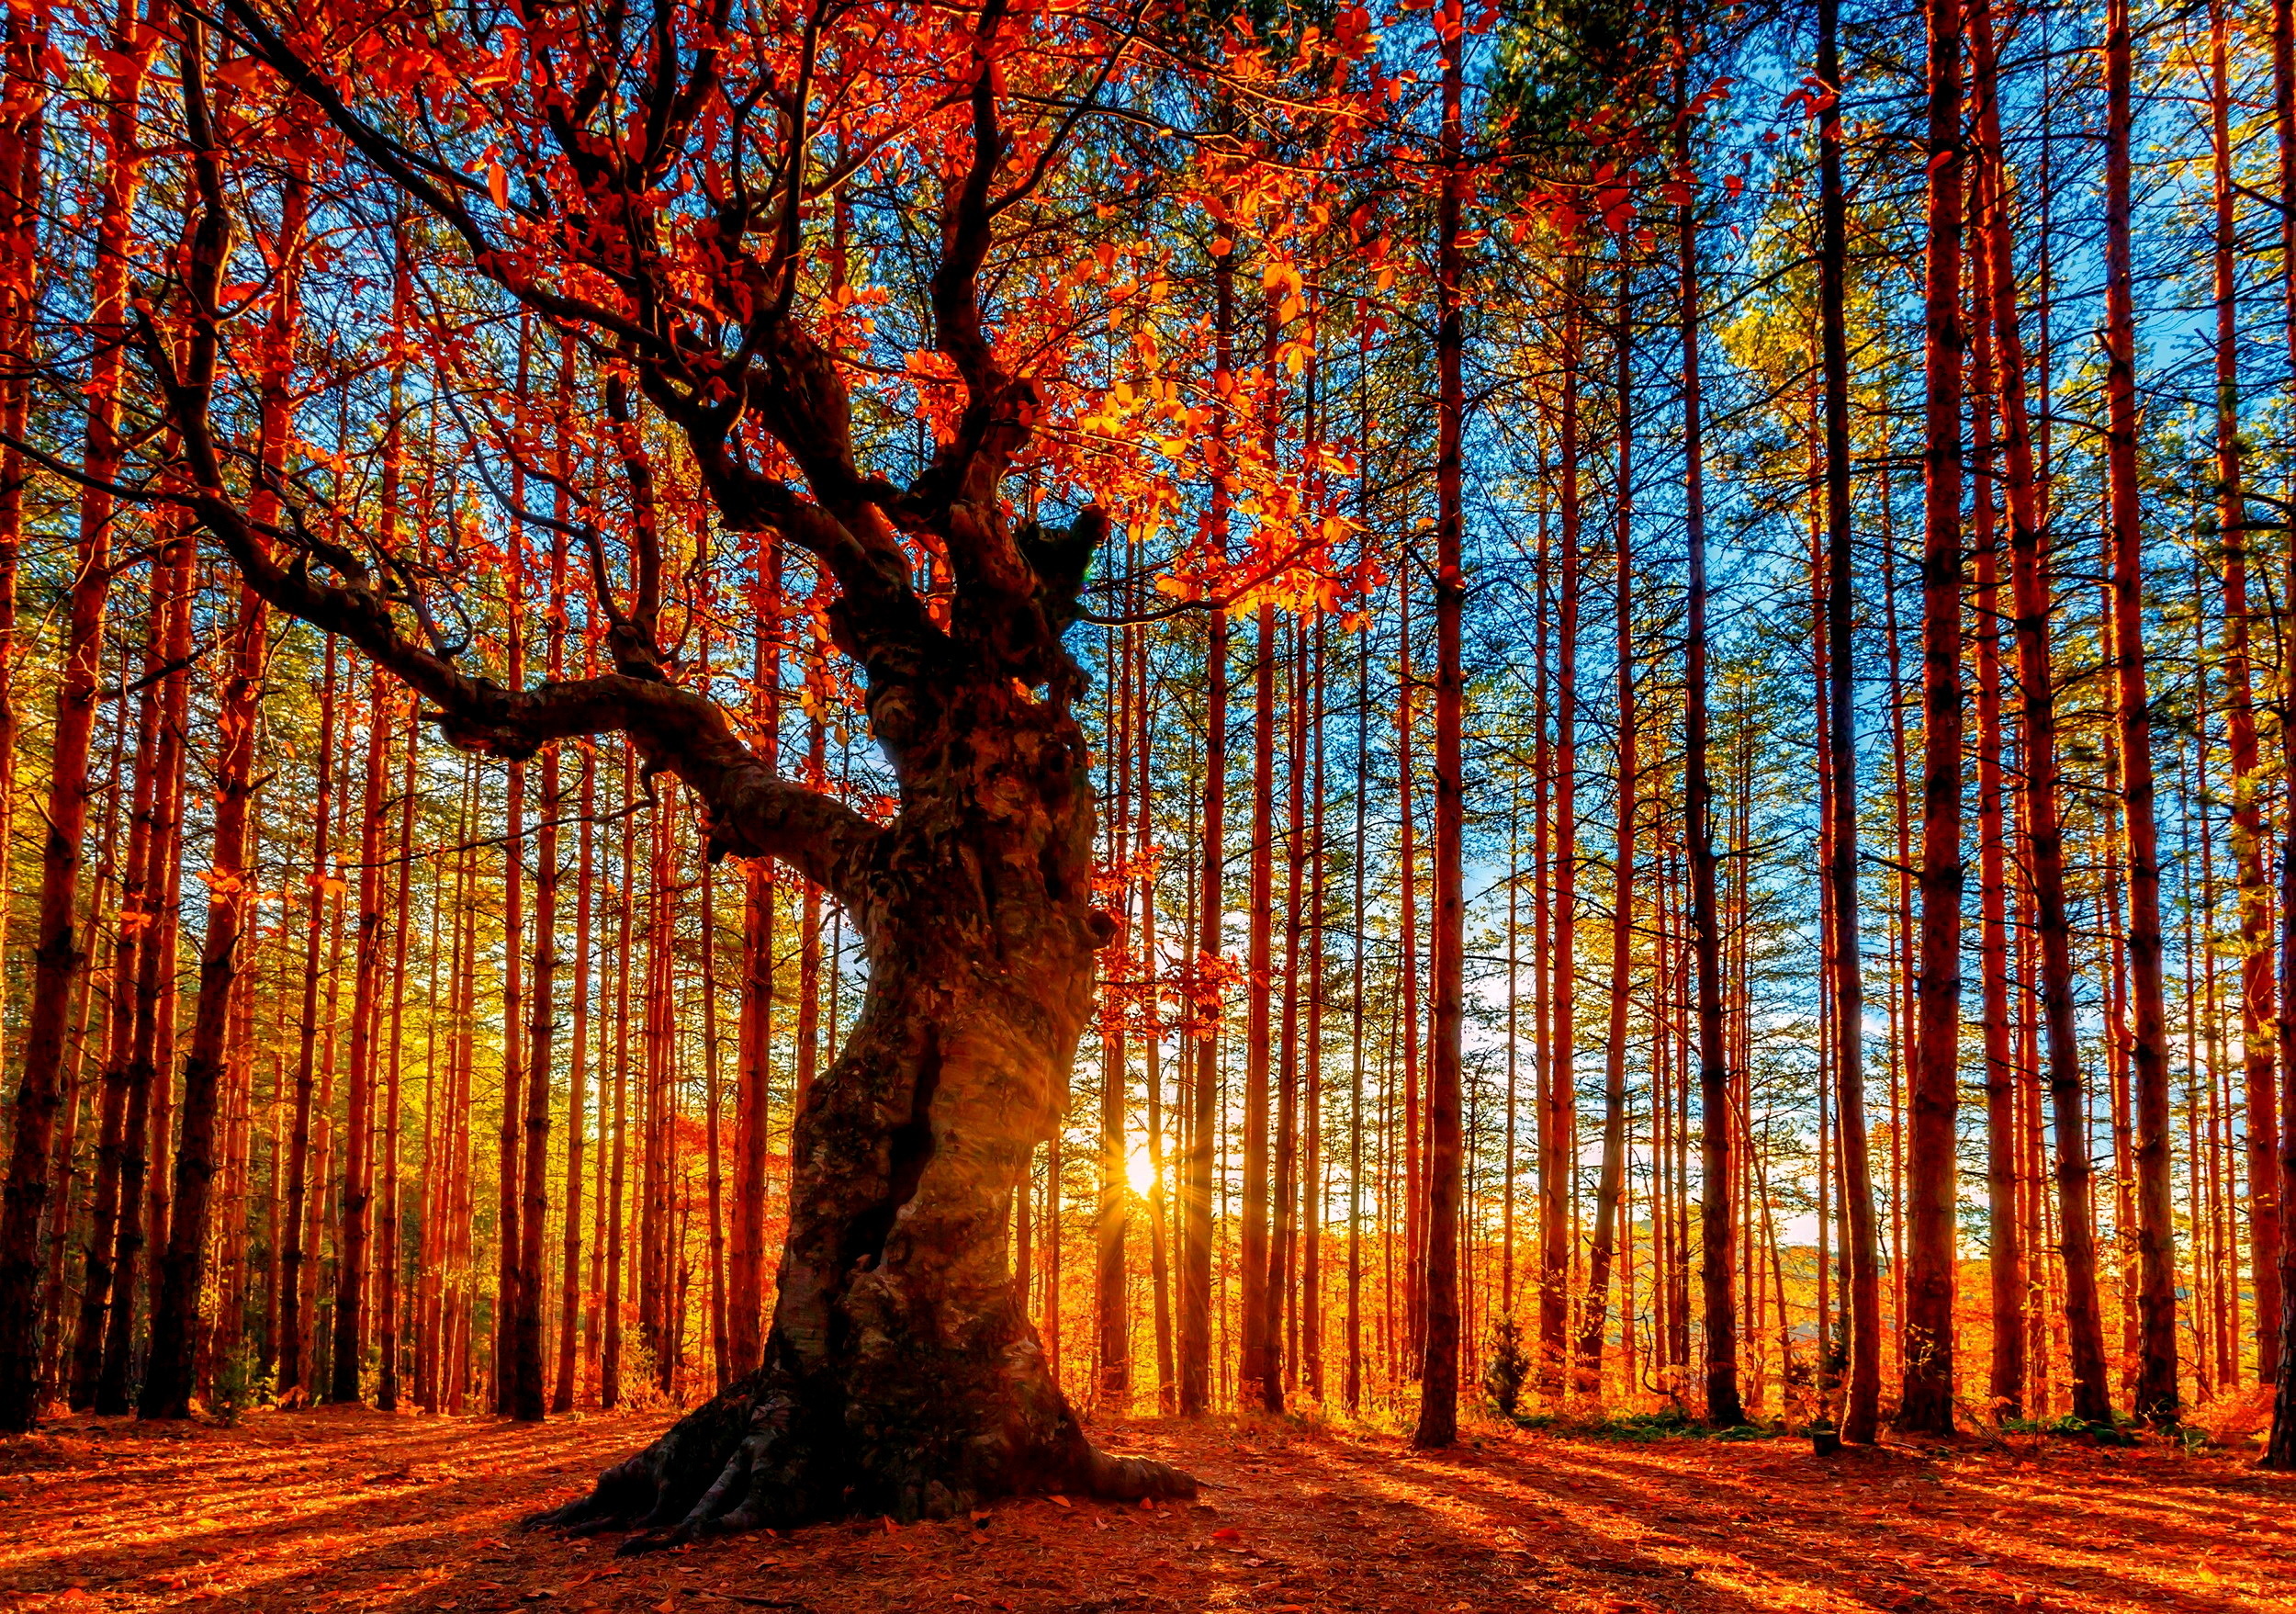 Fall Scenery Wallpapers Free Download - PixelsTalk.Net